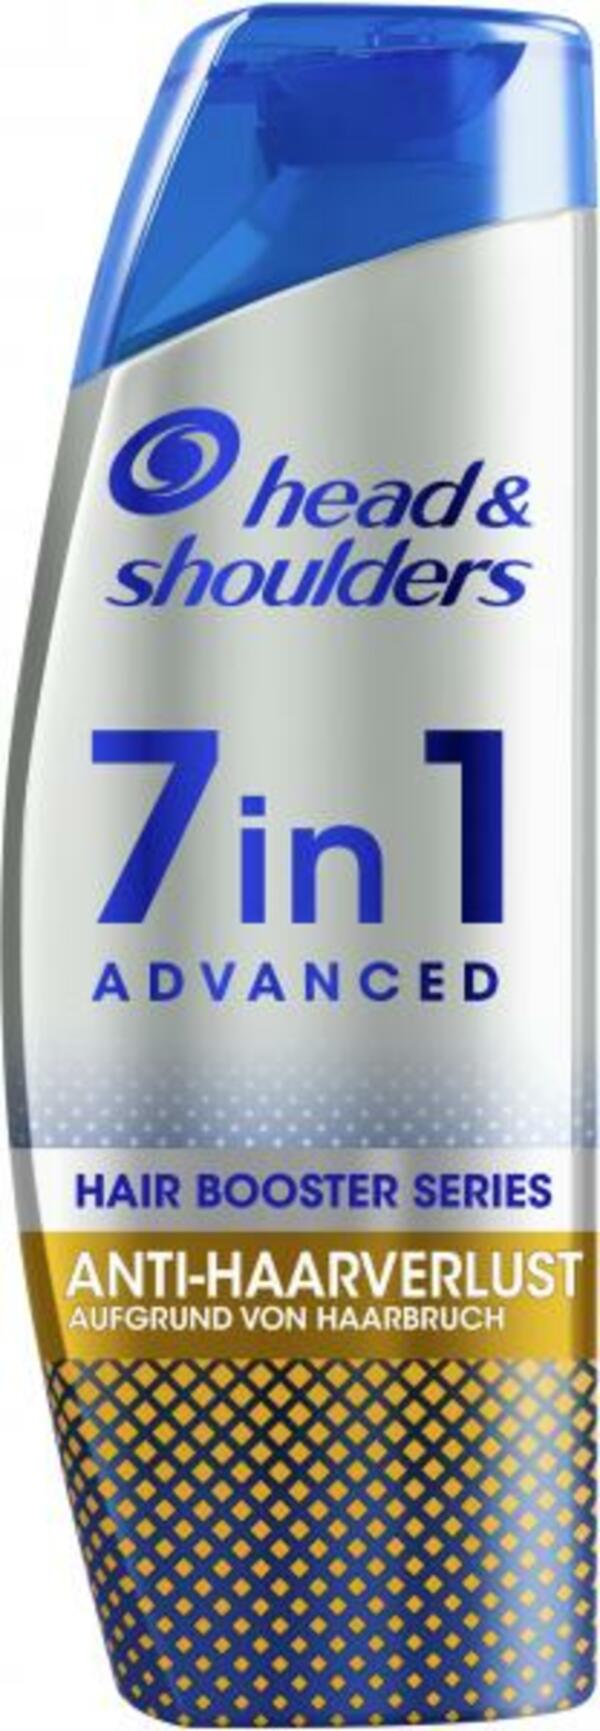 Bild 1 von Head & Shoulders Anti-Schuppen Shampoo 7in1 Advanced Anti-Haarverlust